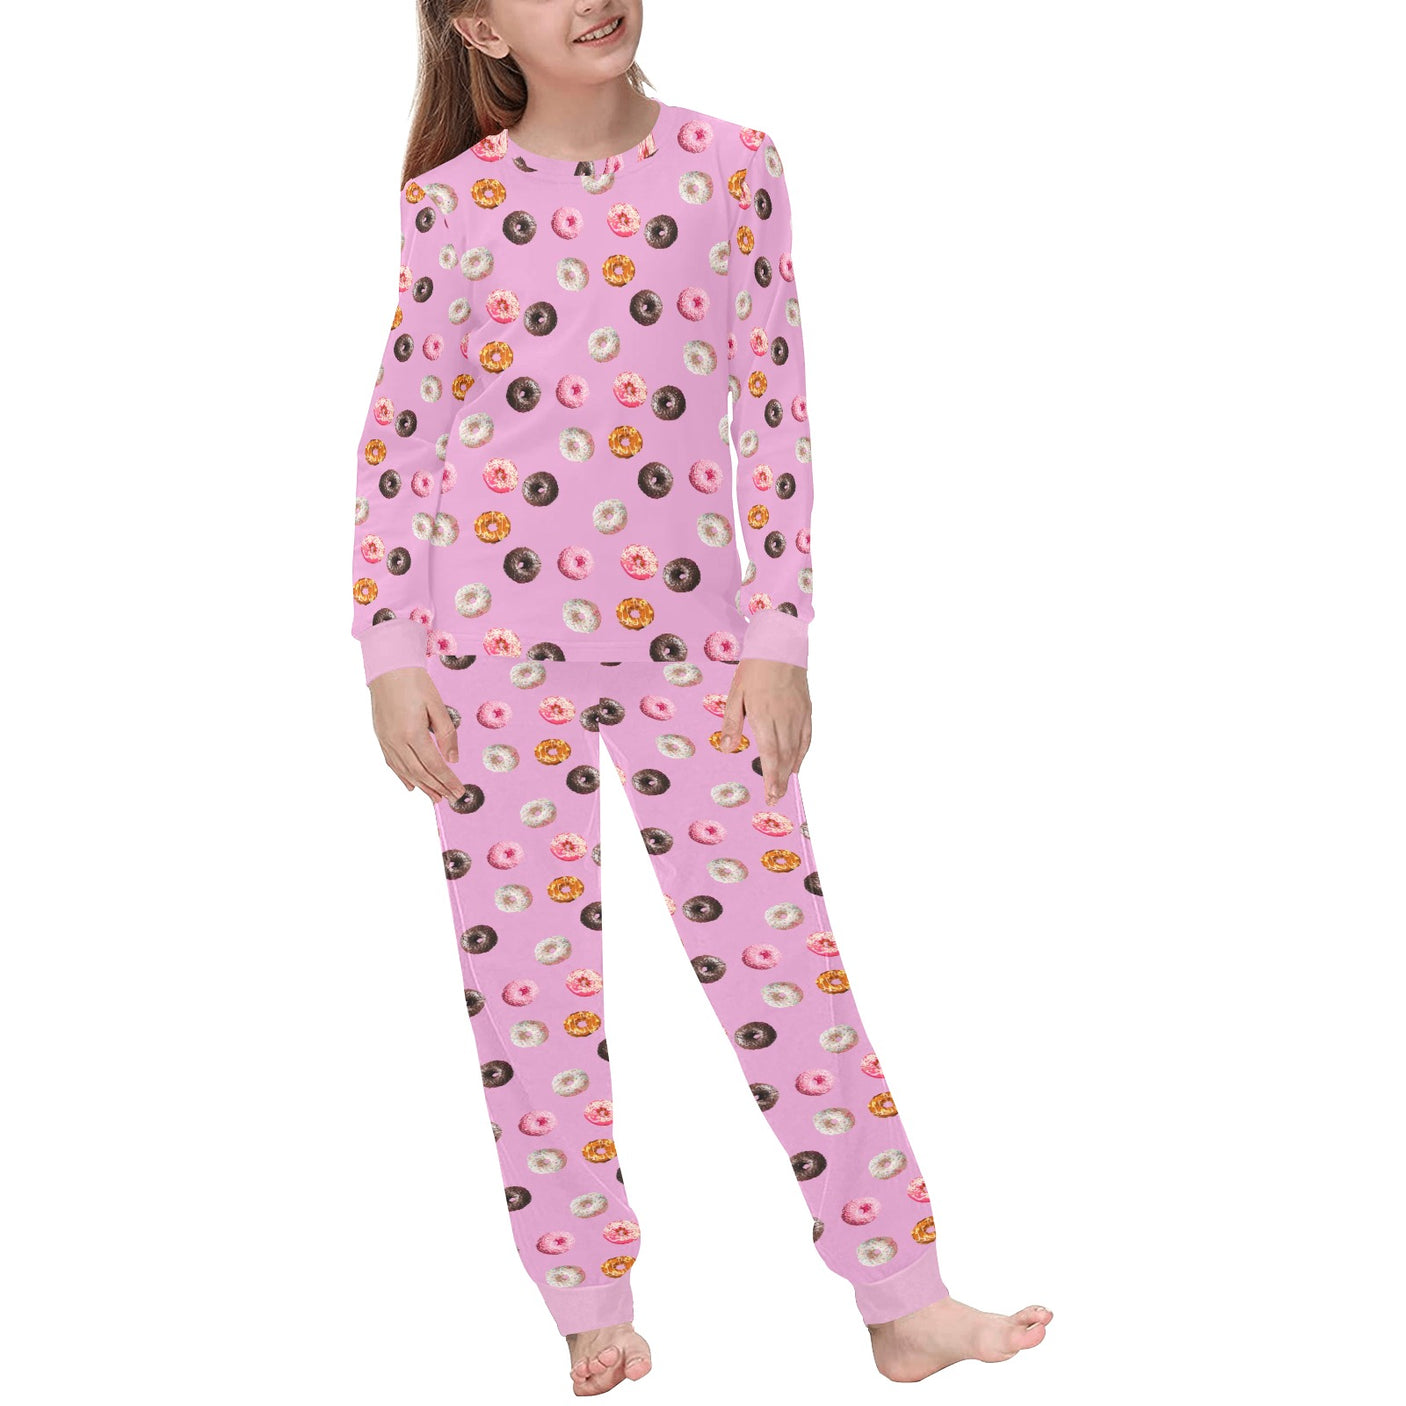 Donut Pajamas for Kids